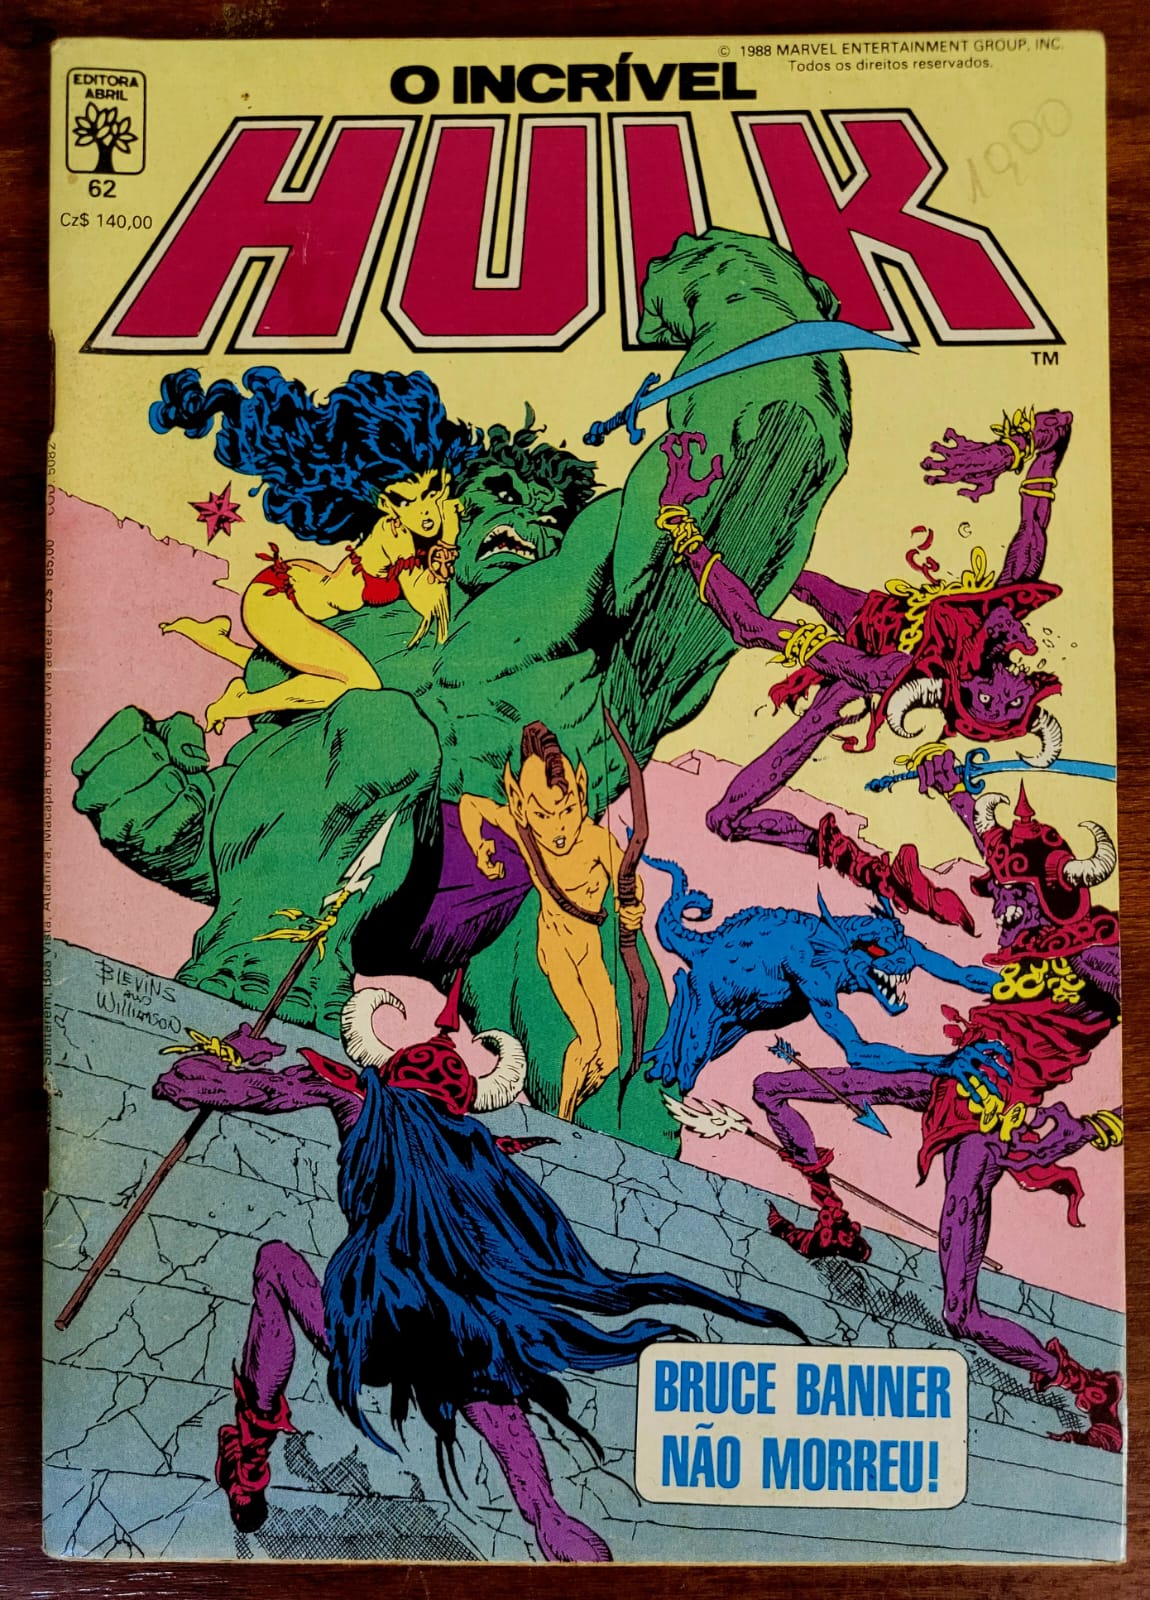 O Incrivel Hulk 62 a Casa do Colecionador